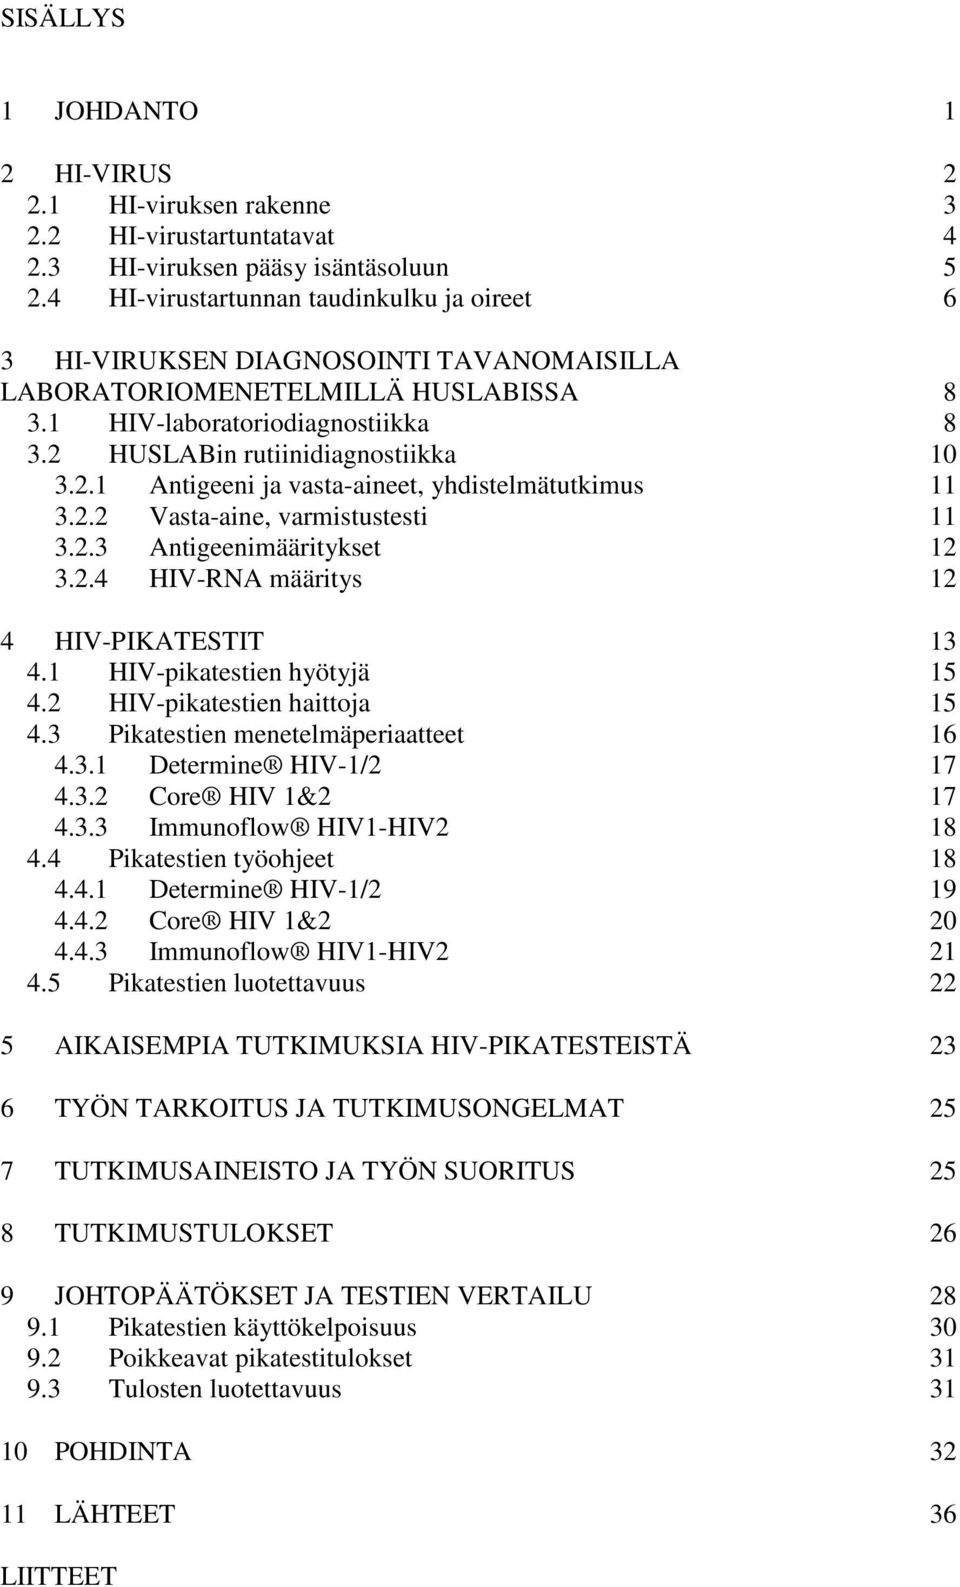 HUSLABin rutiinidiagnostiikka 10 3.2.1 Antigeeni ja vasta-aineet, yhdistelmätutkimus 11 3.2.2 Vasta-aine, varmistustesti 11 3.2.3 Antigeenimääritykset 12 3.2.4 HIV-RNA määritys 12 4 HIV-PIKATESTIT 13 4.